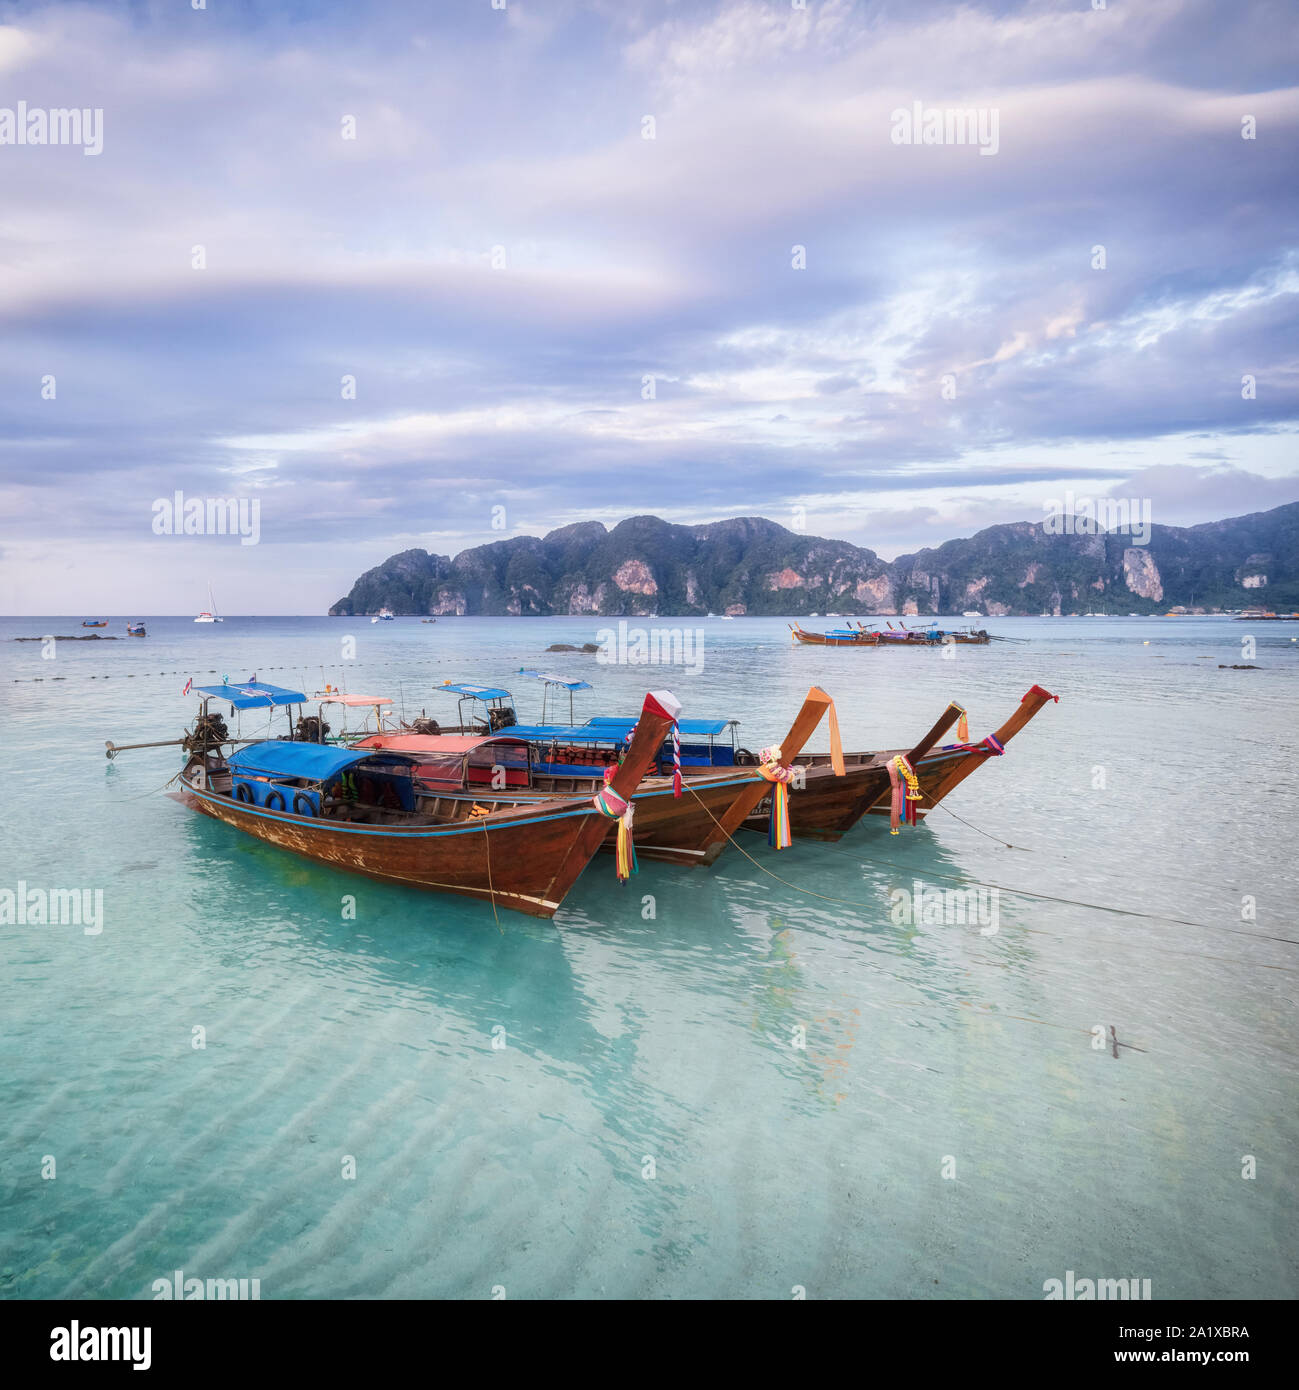 La isla de Phi-Phi panorama del atardecer en la playa Foto de stock